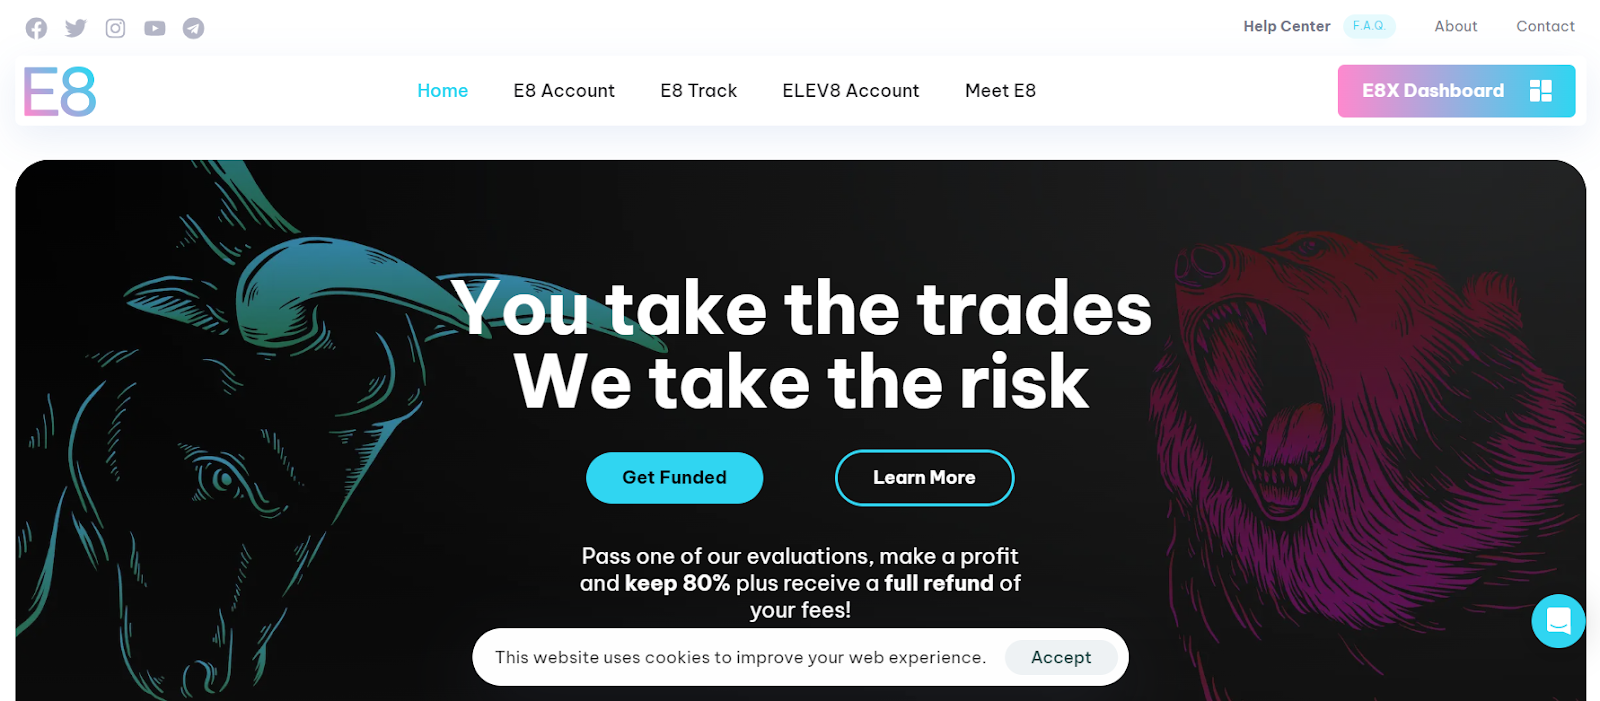 Обзор E8 Funding - Официальный сайт компании